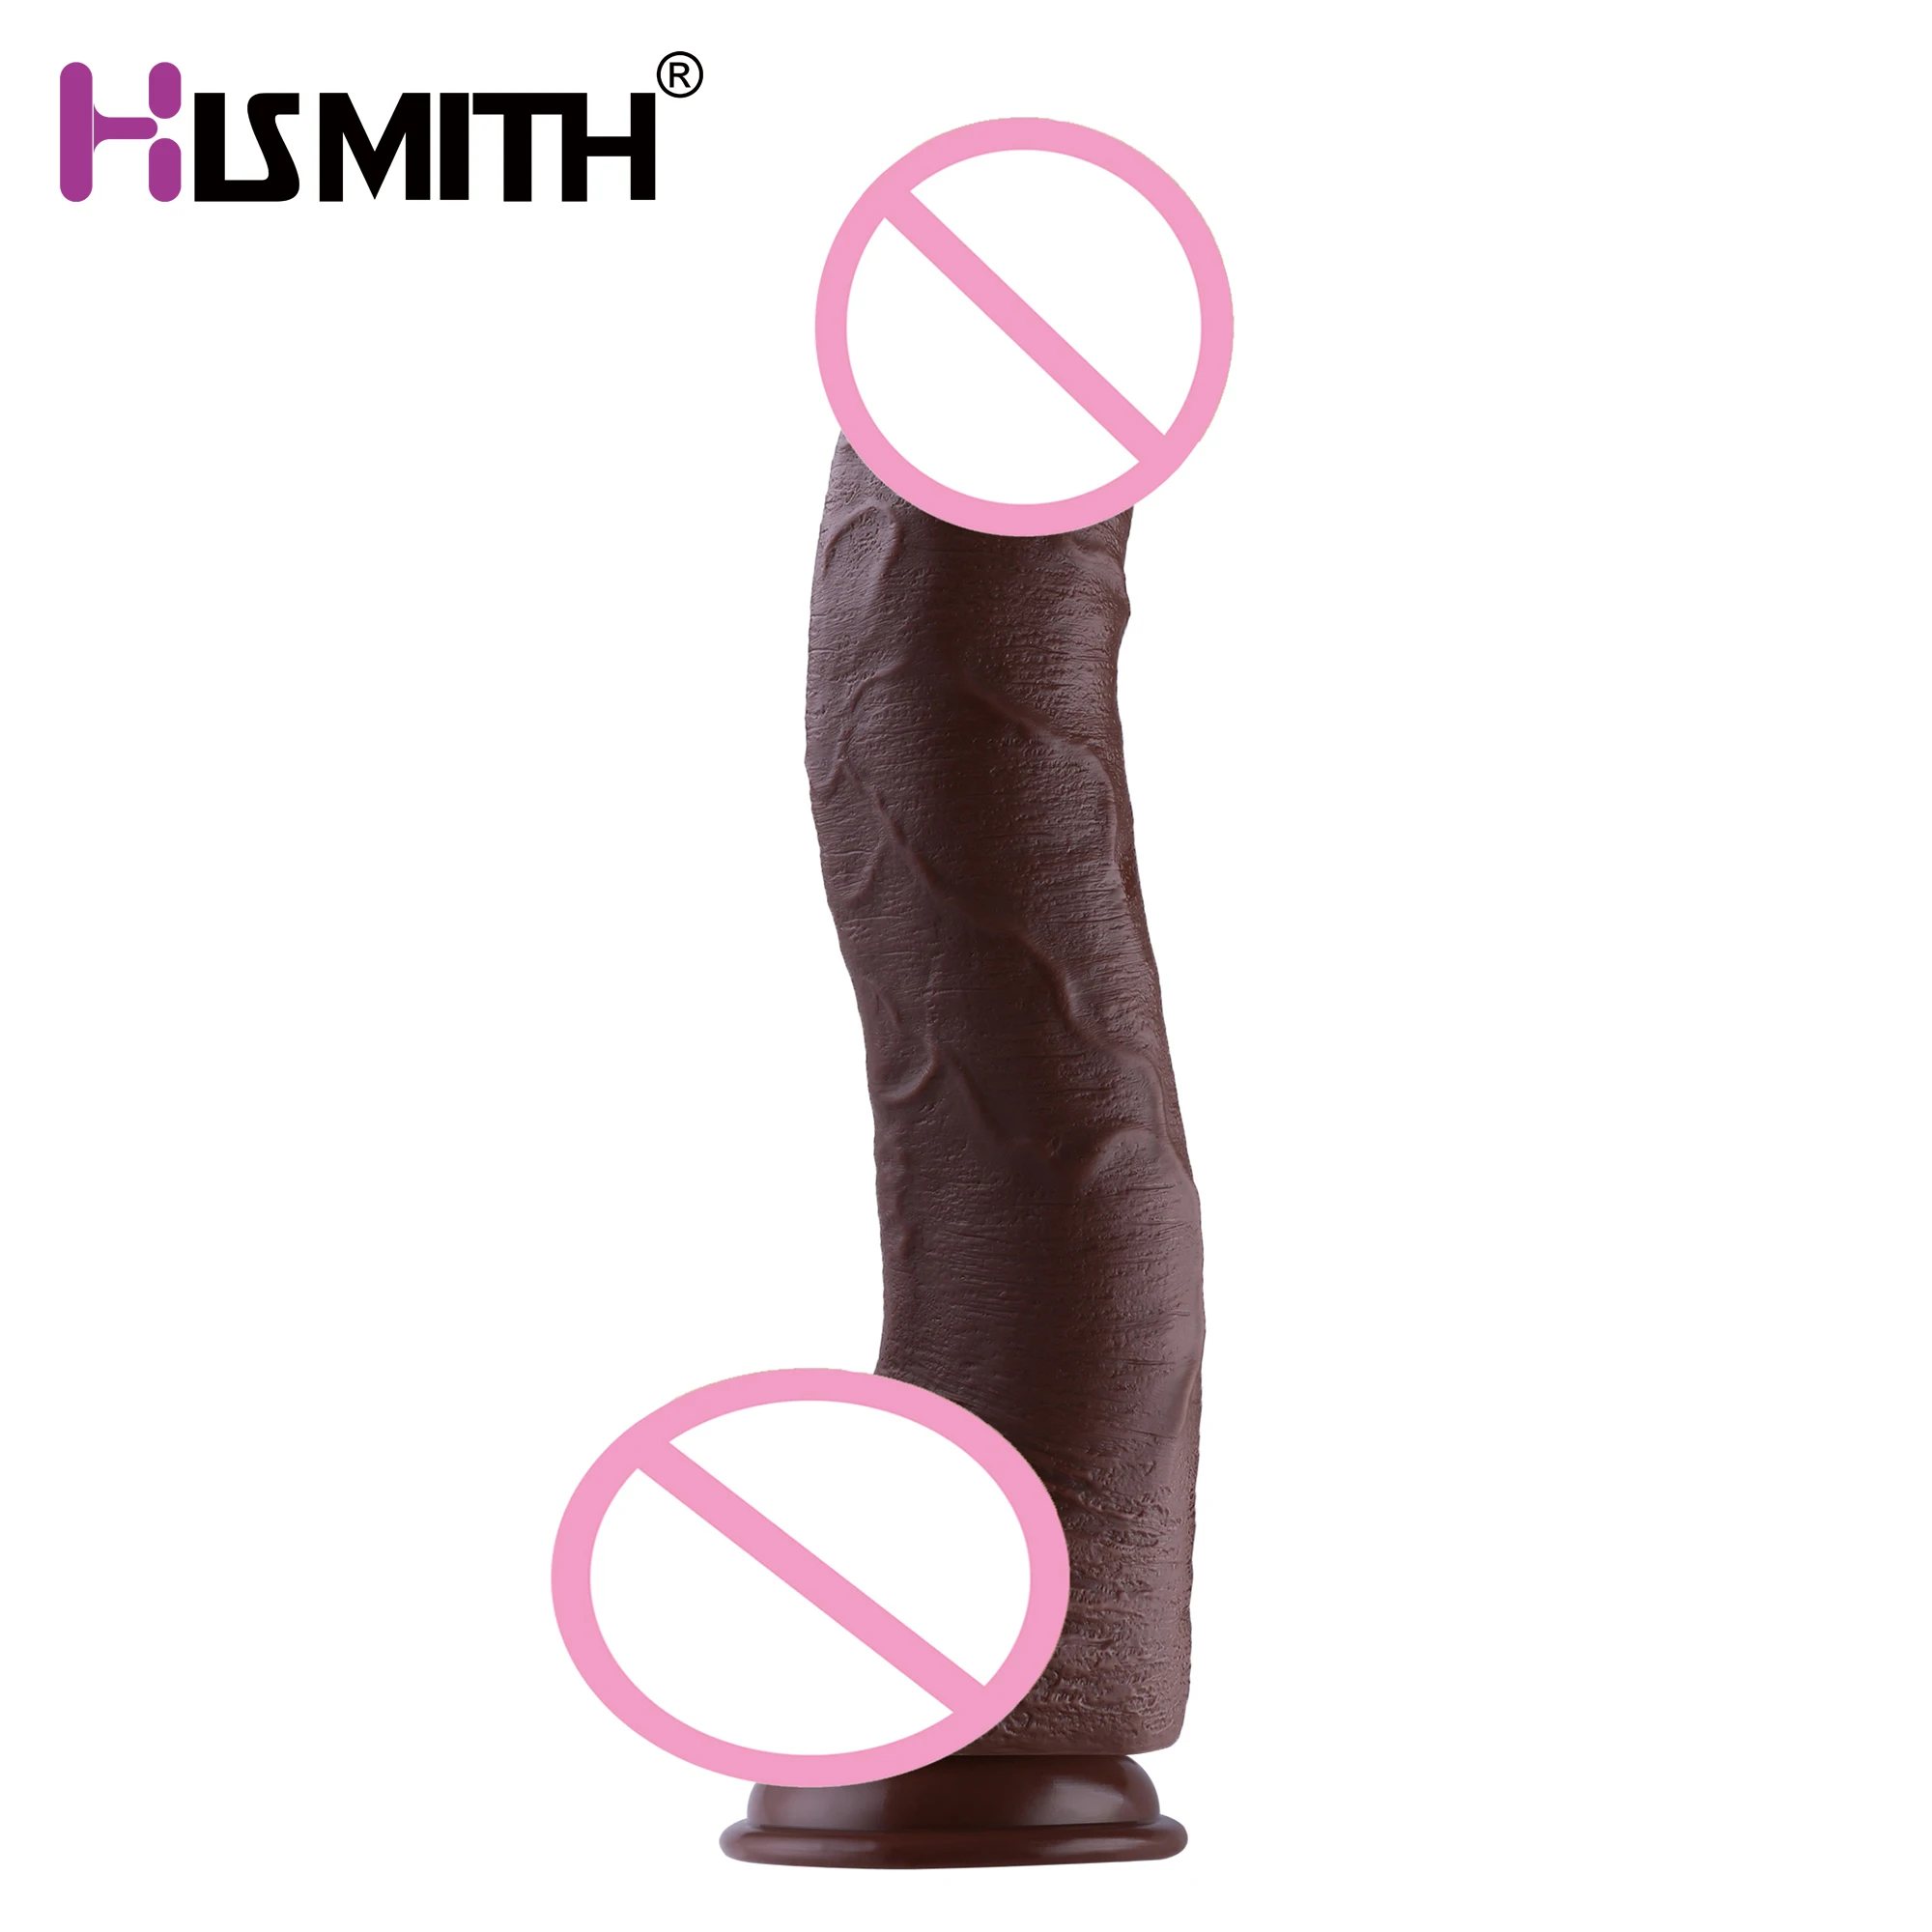 Hismith 23cm Inseriabil Silicon Vibrator Realiste Vas de Sânge Mașină de Sex Accesoriu KlicLok Sistem cu ventuza 6cm Vibrator Mare